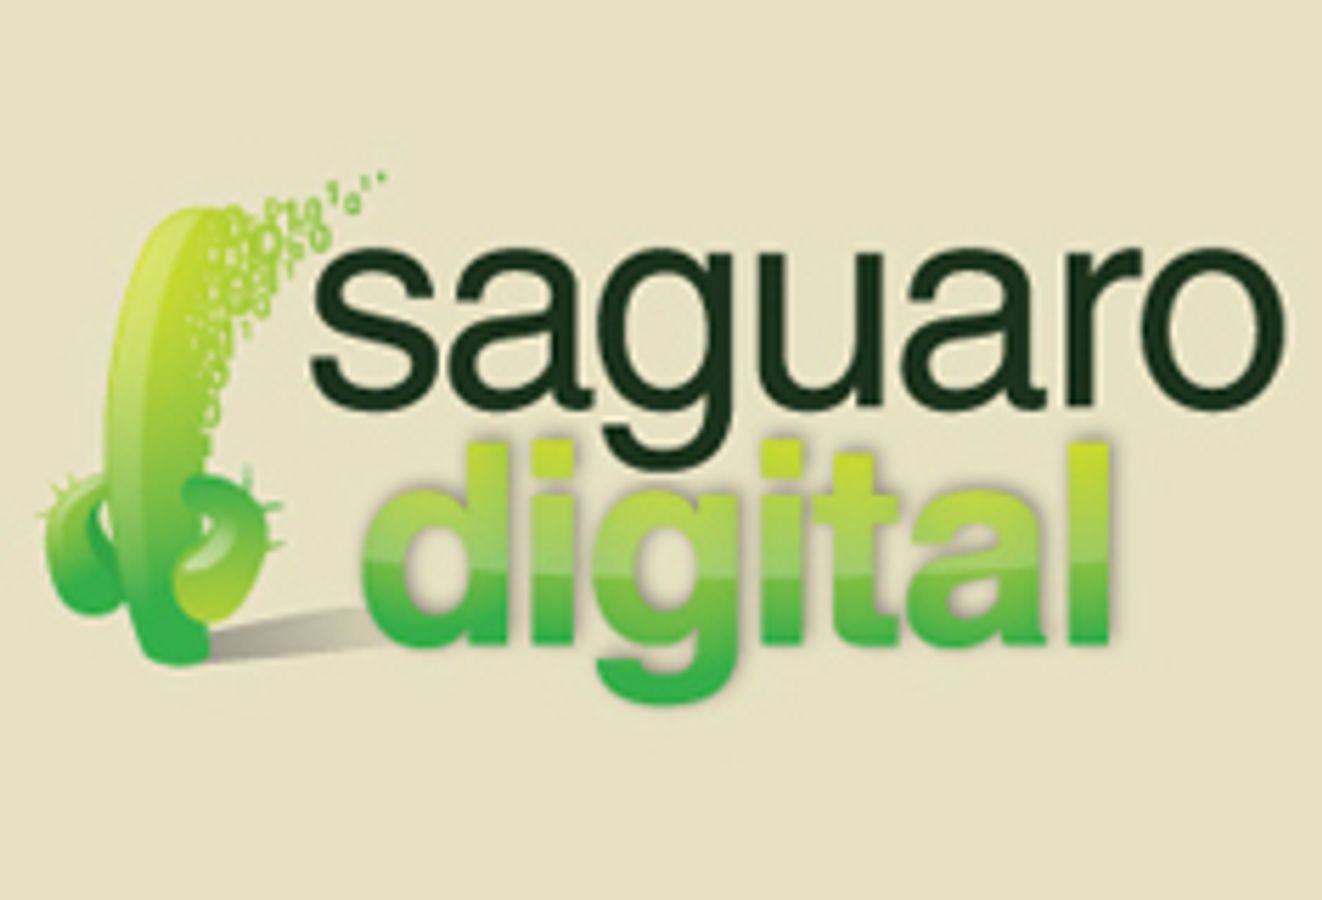 Saguaro.com